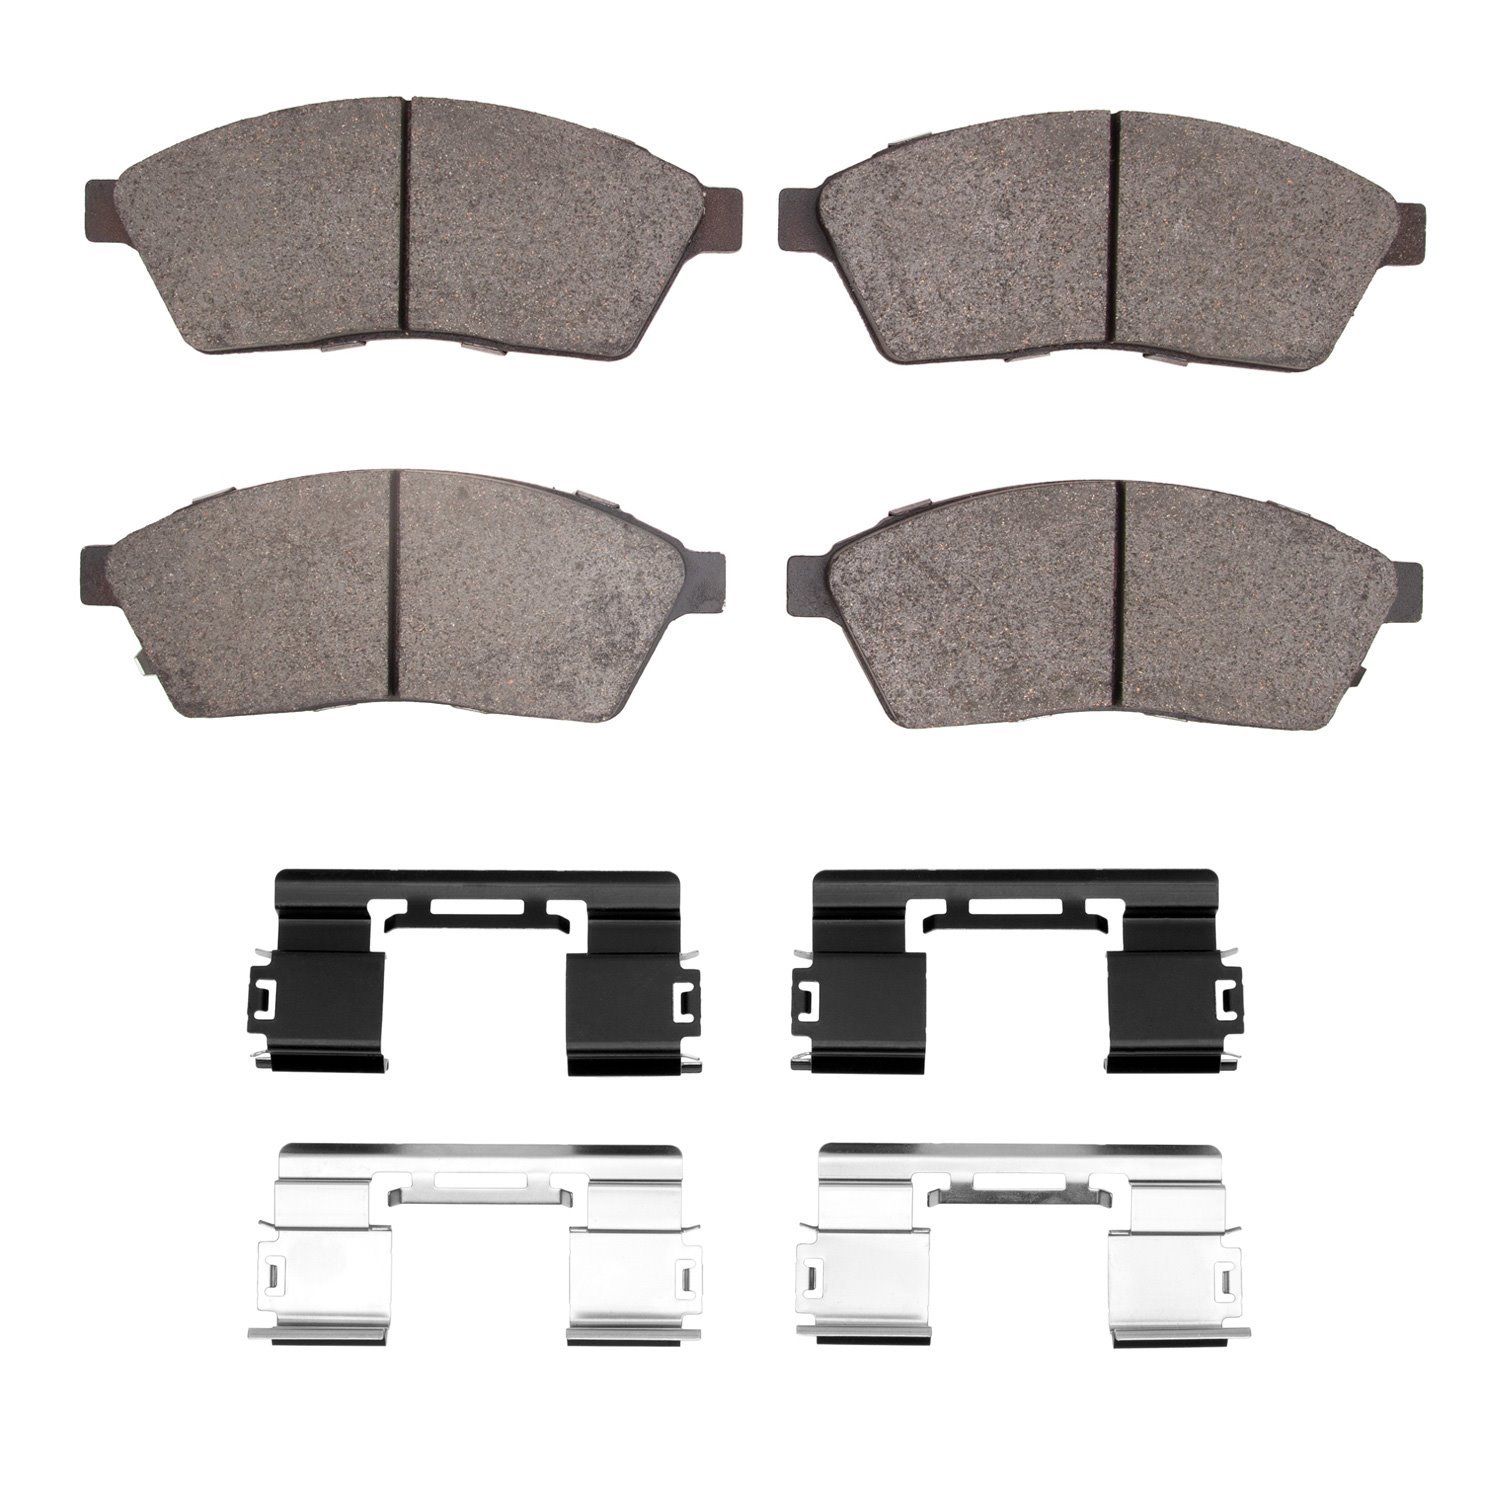 1551-1422-01 5000 Advanced Low-Metallic Brake Pads & Hardware Kit, 2010-2016 GM, Position: Front